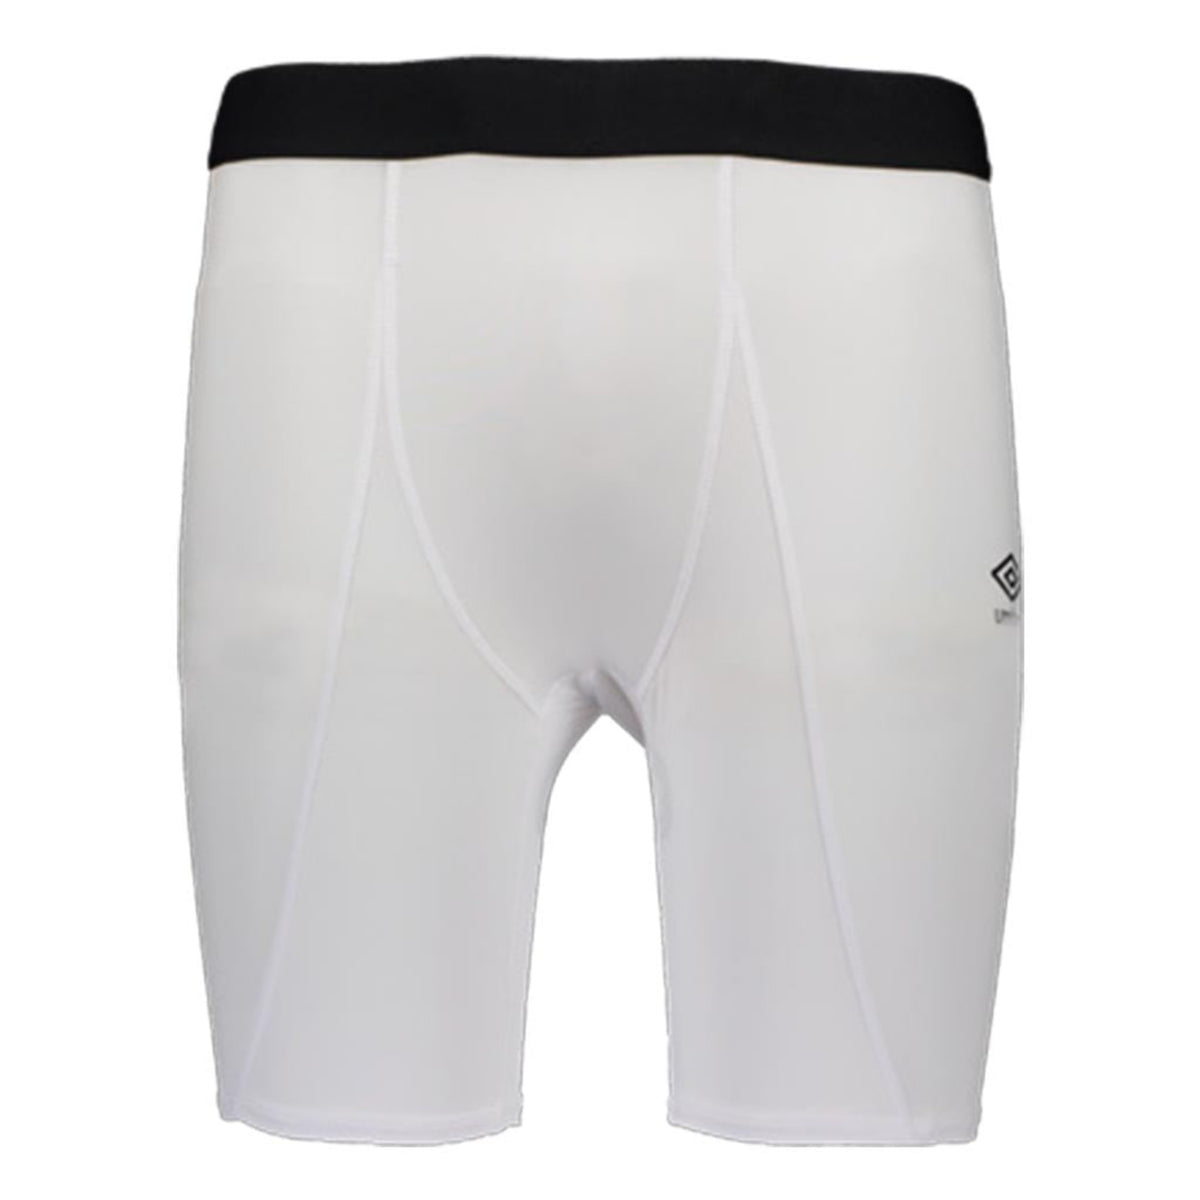 Umbro Core Power short cuissard sous-vêtement sport junior white